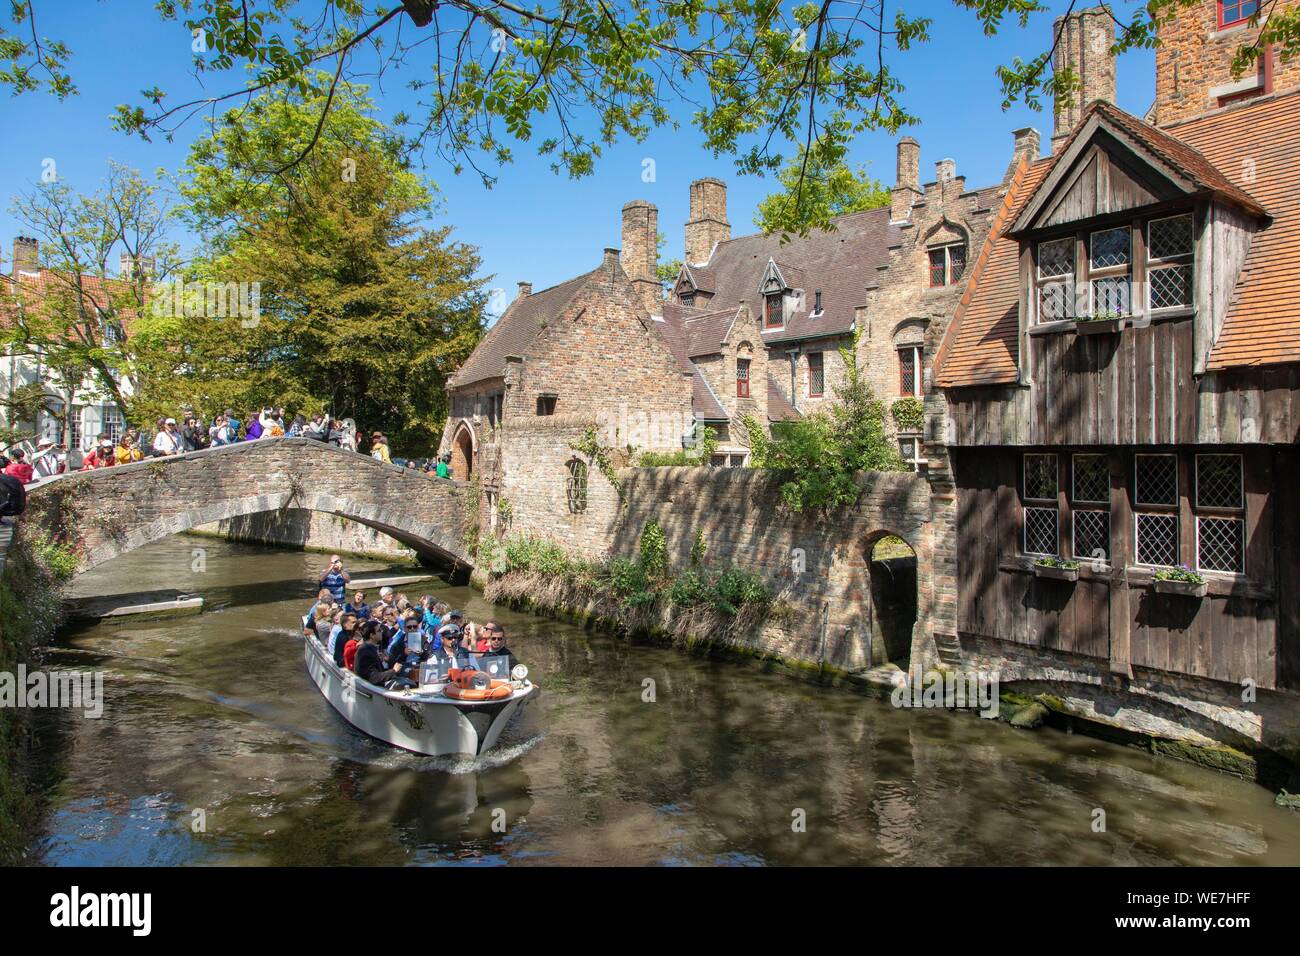 Bélgica, Flandes Occidental, brujas, centro histórico catalogado como Patrimonio Mundial por la UNESCO, crucero en barco turístico pasando bajo el puente de Bonifacius Foto de stock